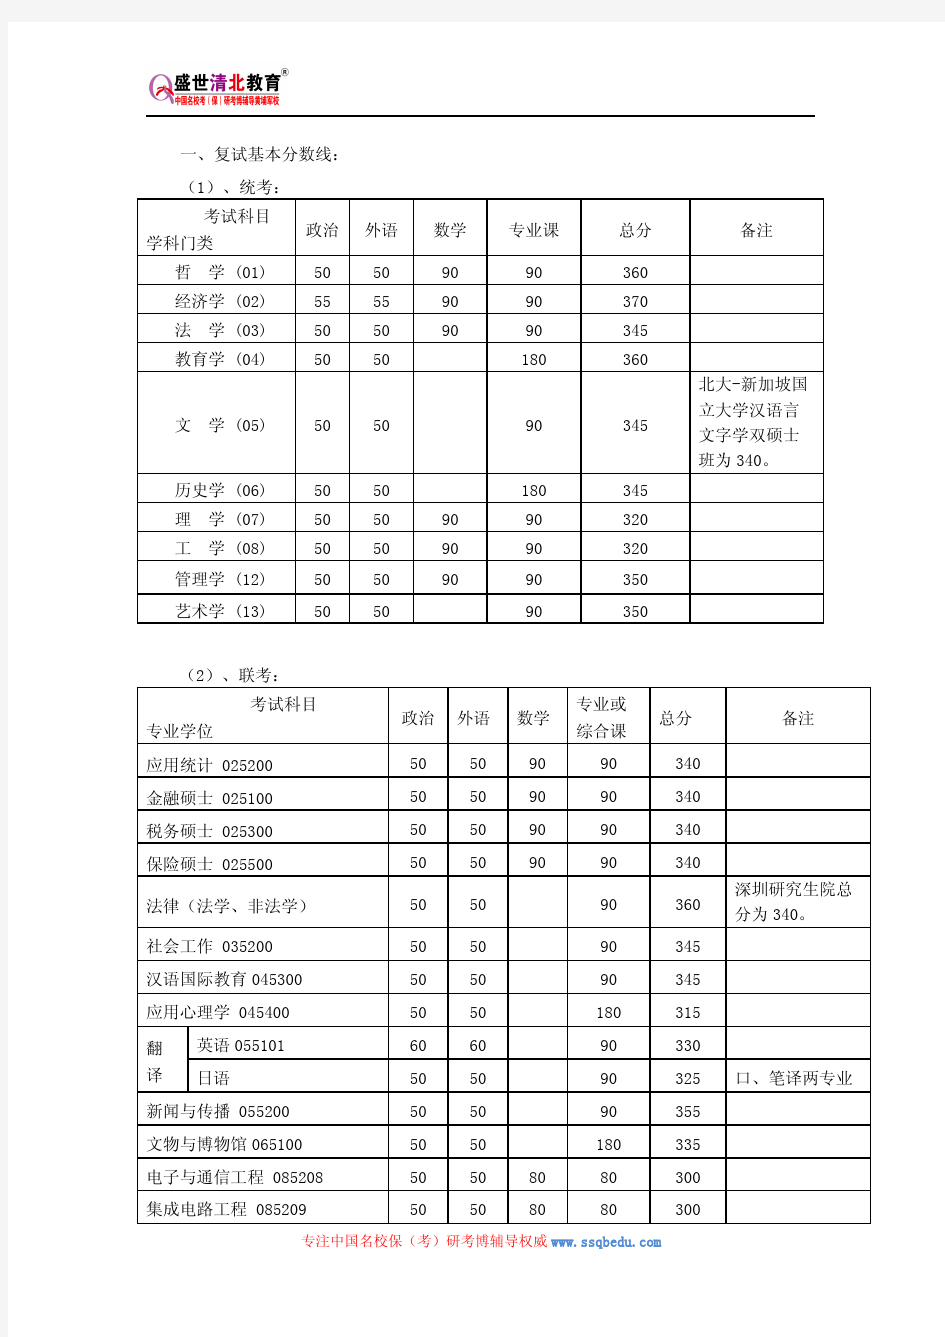 北京大学857自然地理学考研参考书、历年真题、复试分数线